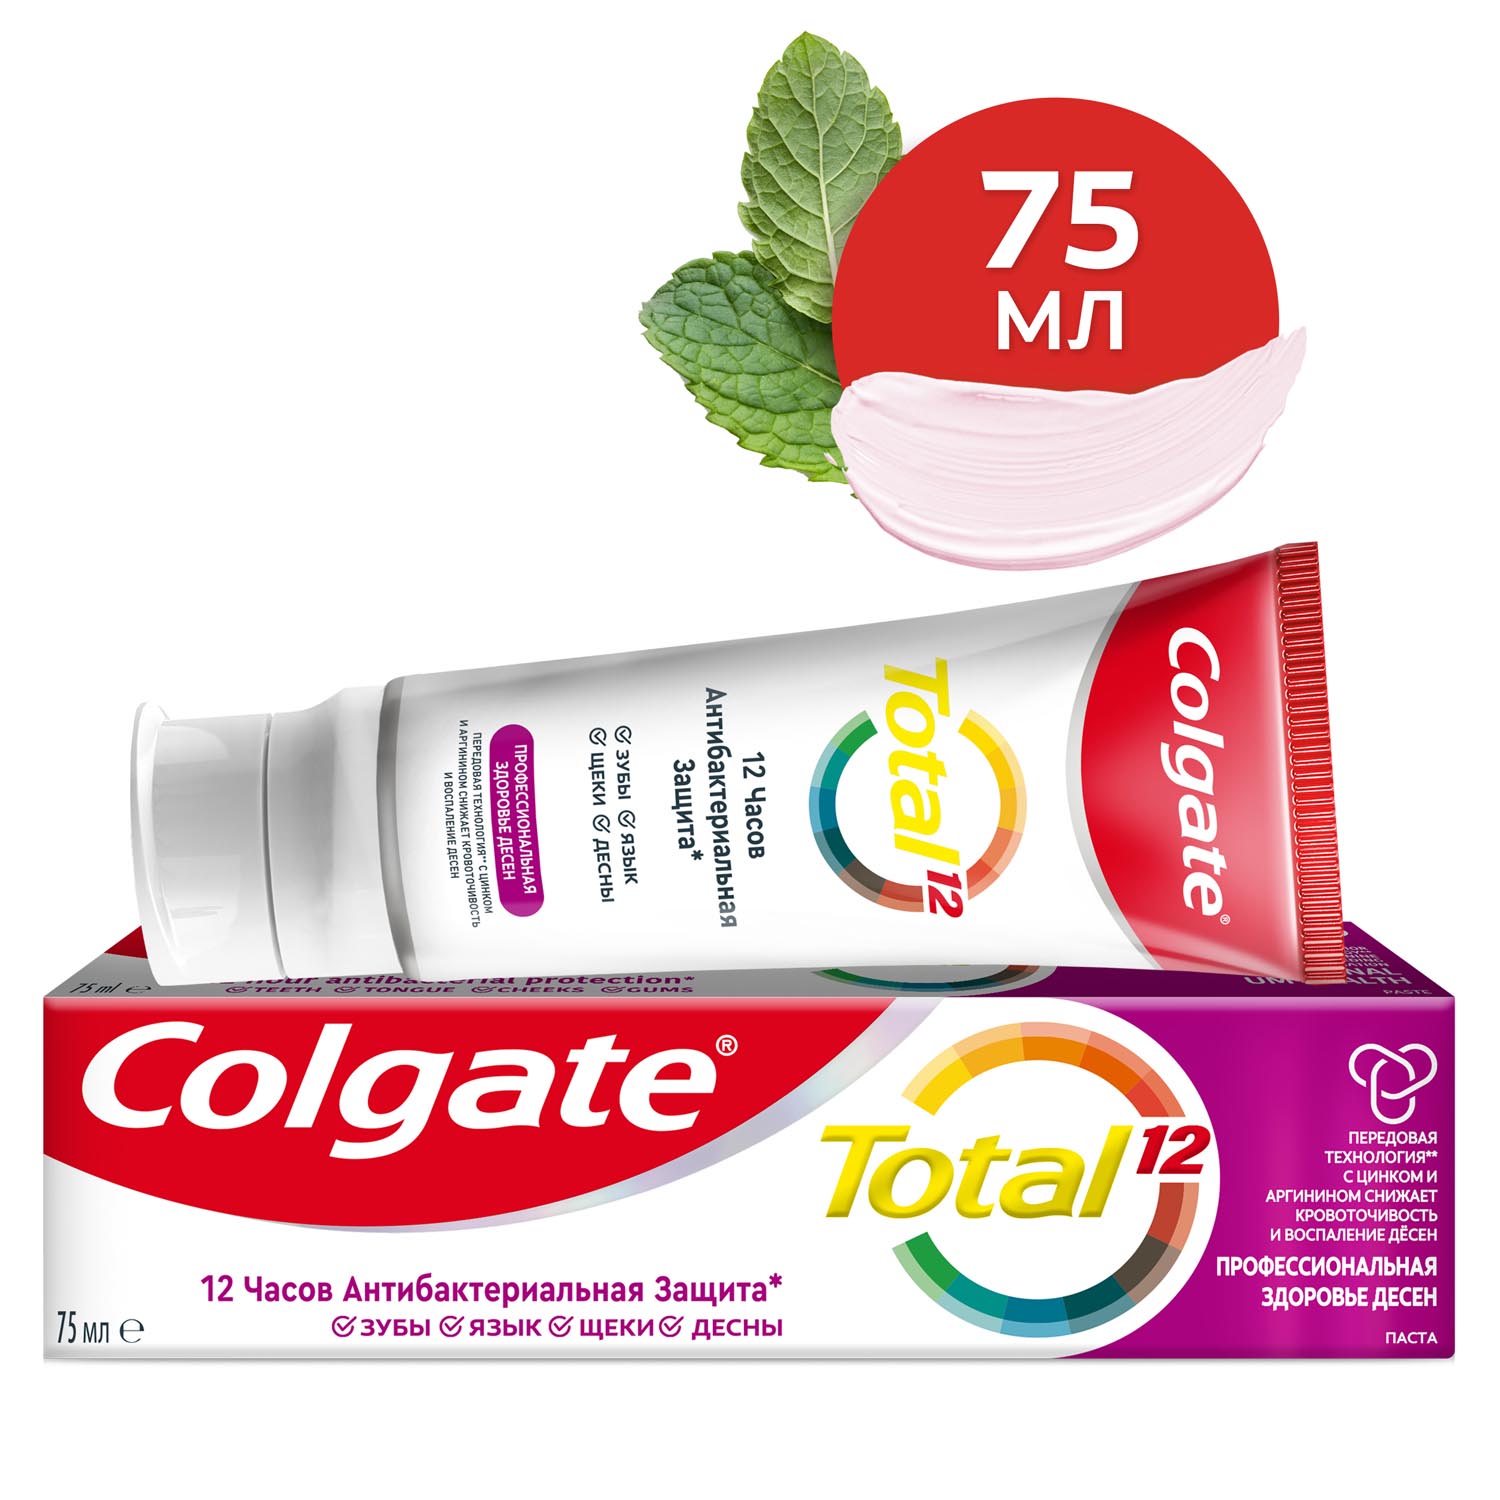 Зубная паста Colgate TOTAL 12 Профессиональная Здоровье Десен 75 мл, размер 17x4,7x4 см CN06150A - фото 1